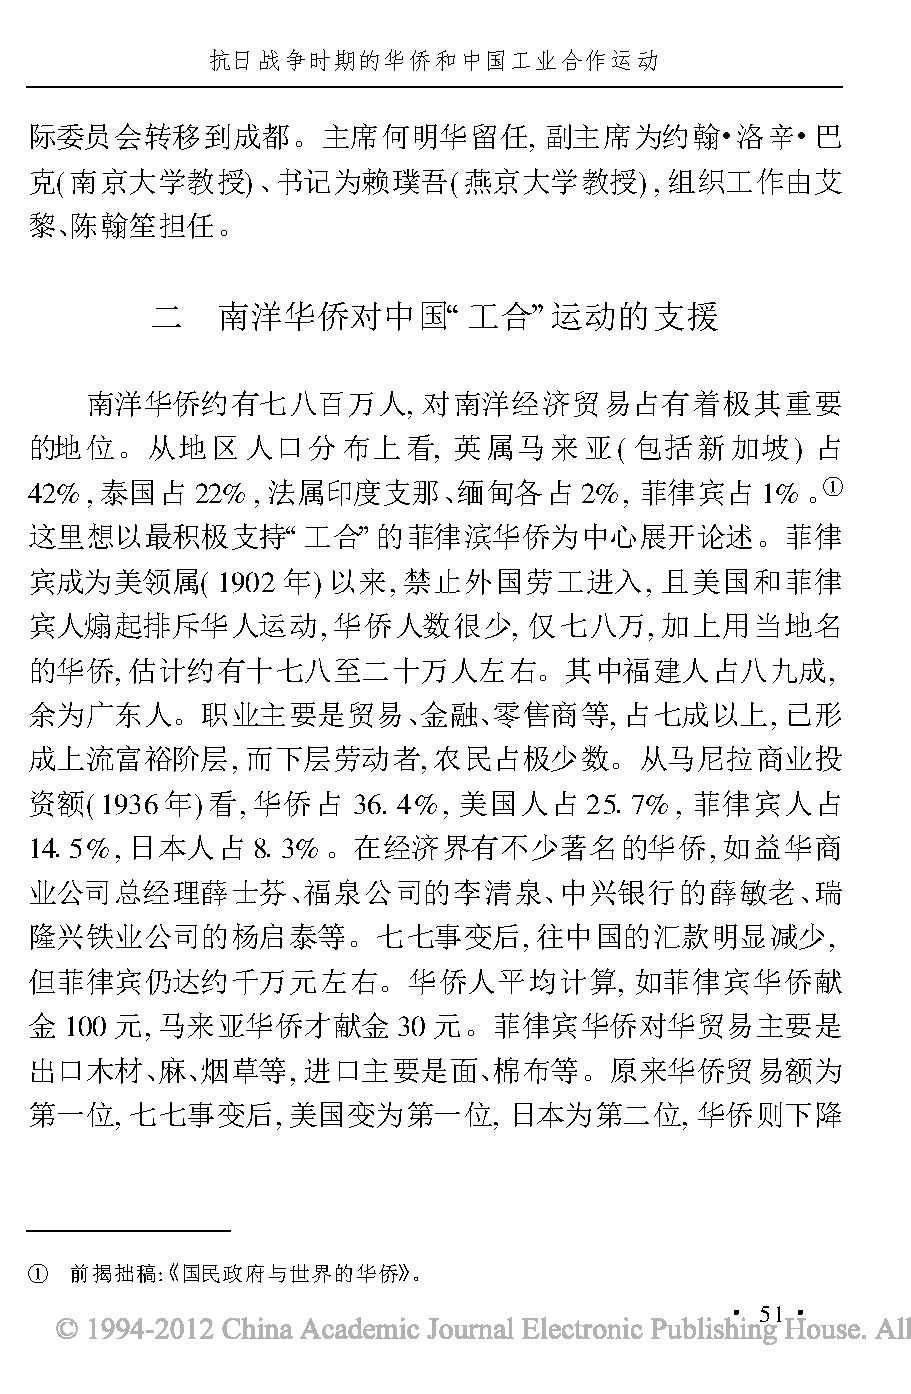 抗日战争时期的华侨和中国工业合作运动_页面_08.jpg